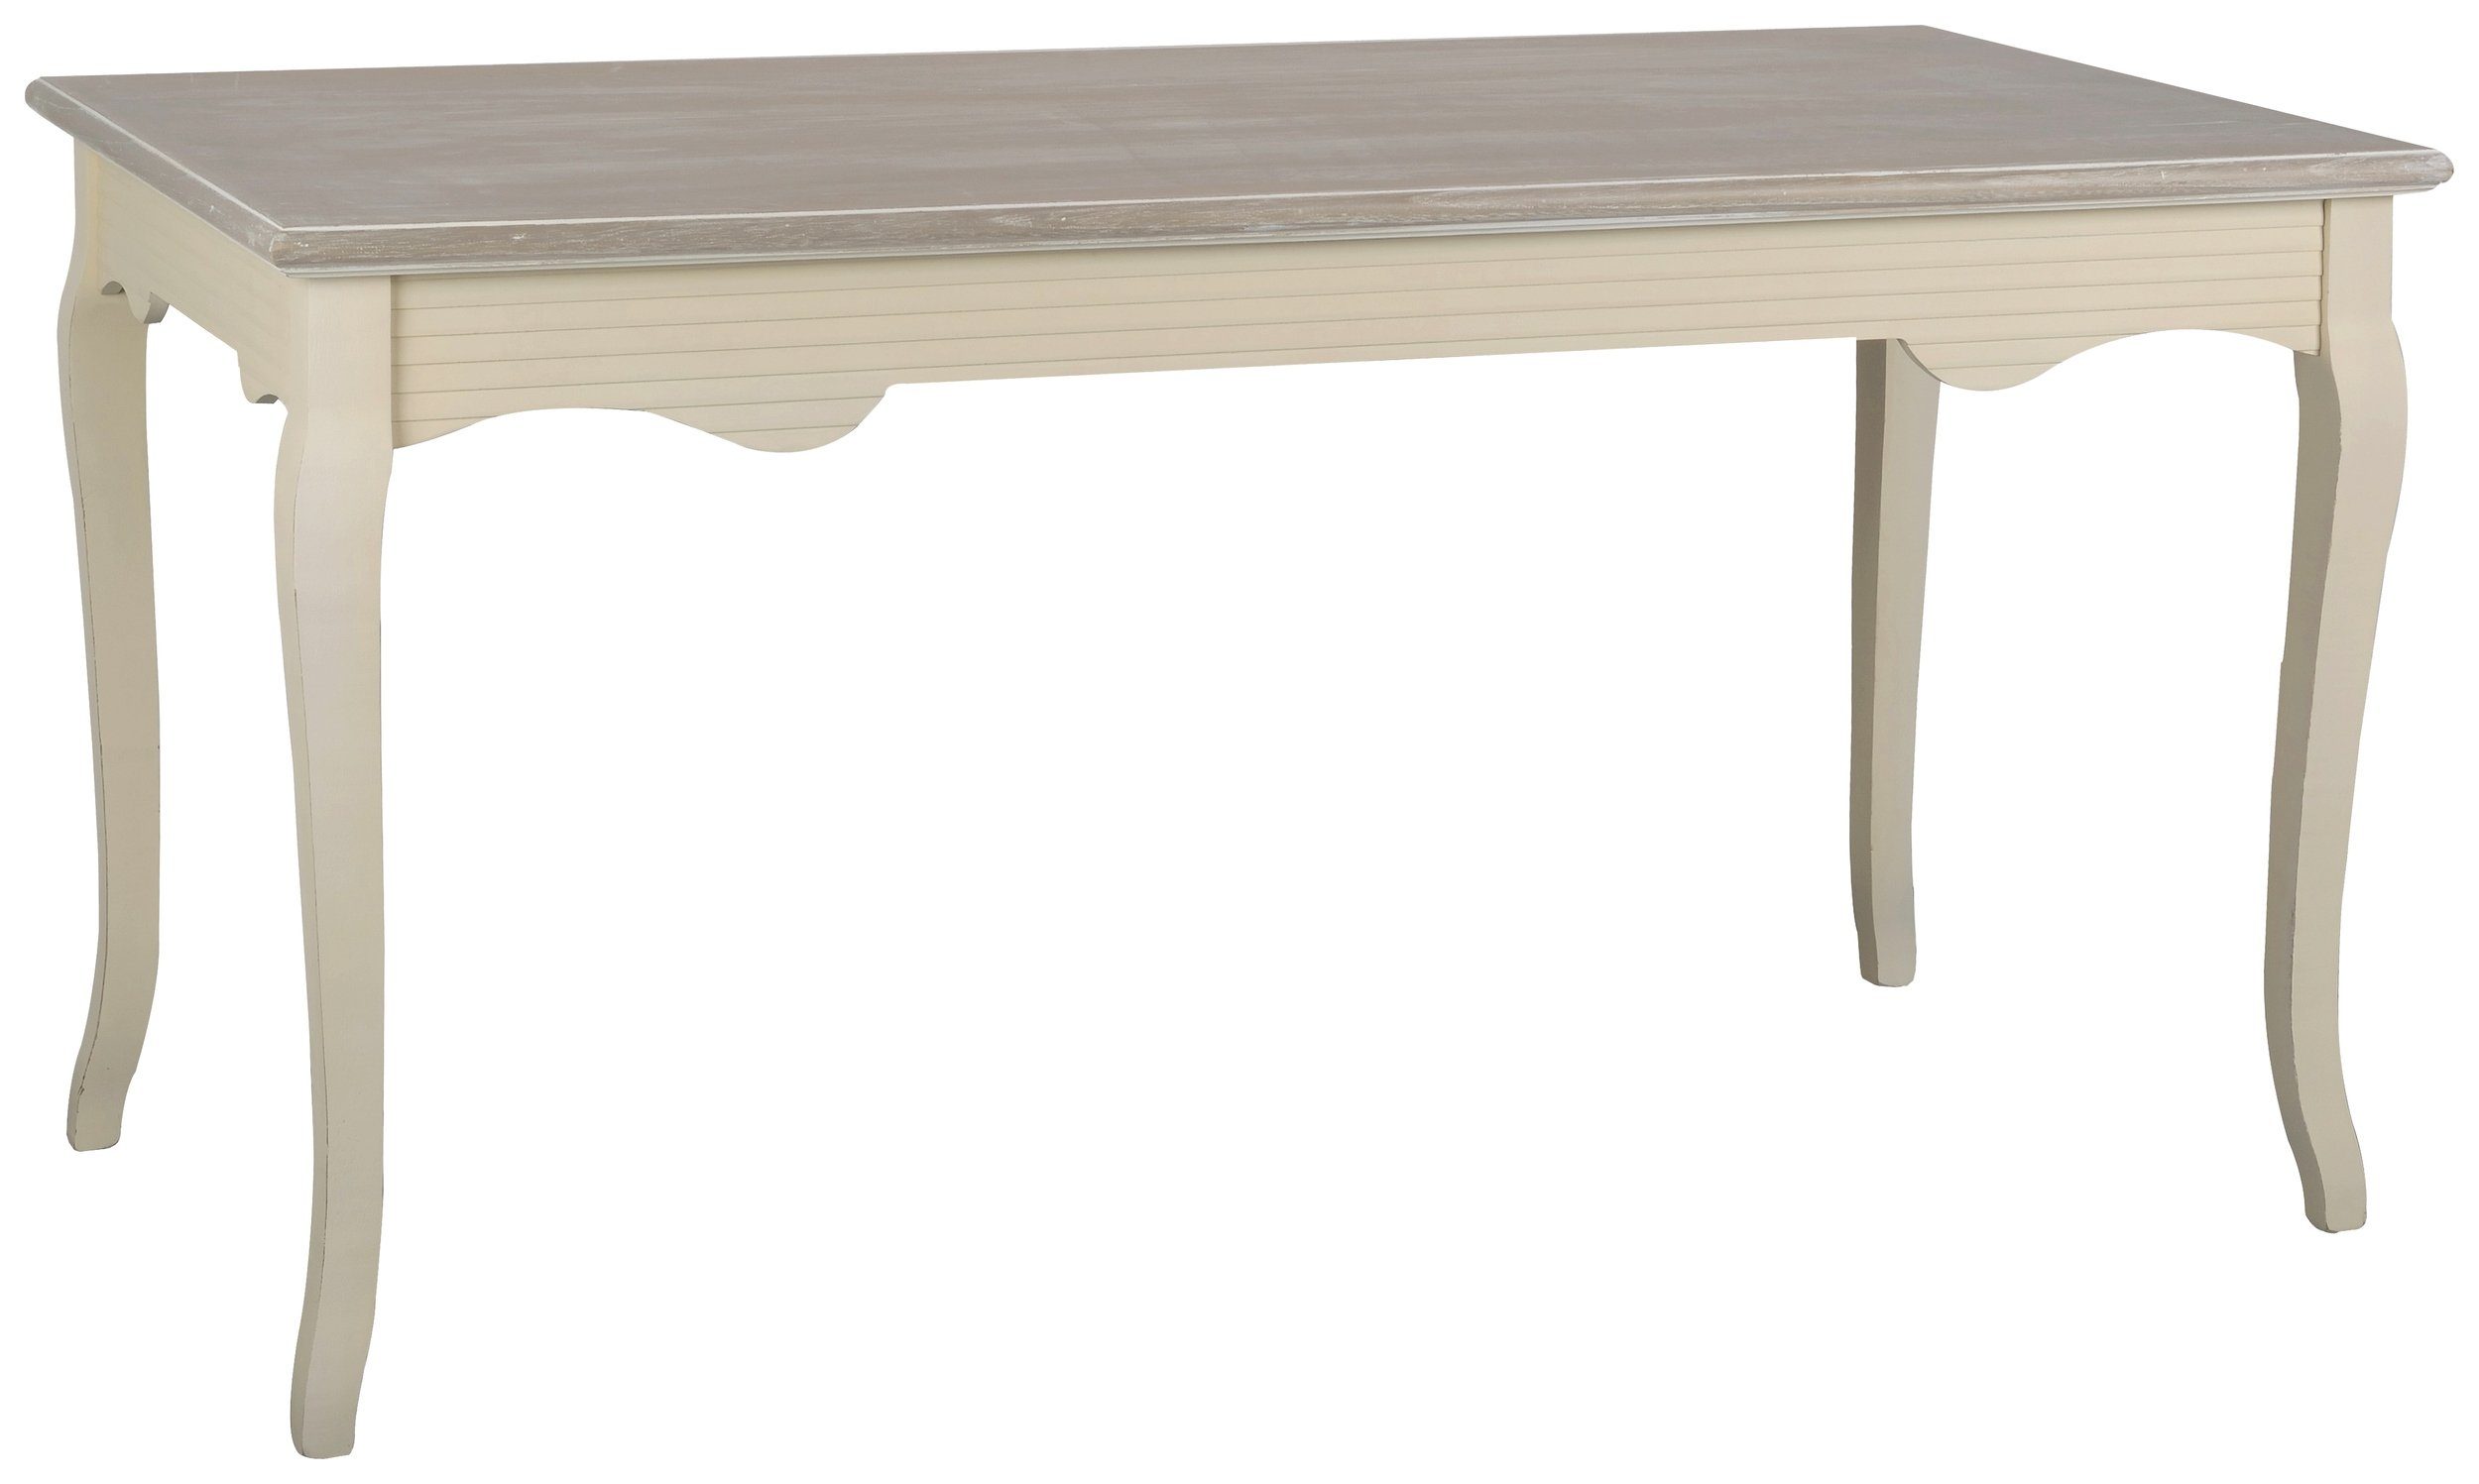 Stylefy Esstisch Pesaro Pappel Creme Hellbraun (Esstisch, Tisch), aus Massivholz, rechteckig, viel Stauraum, Landhausstil